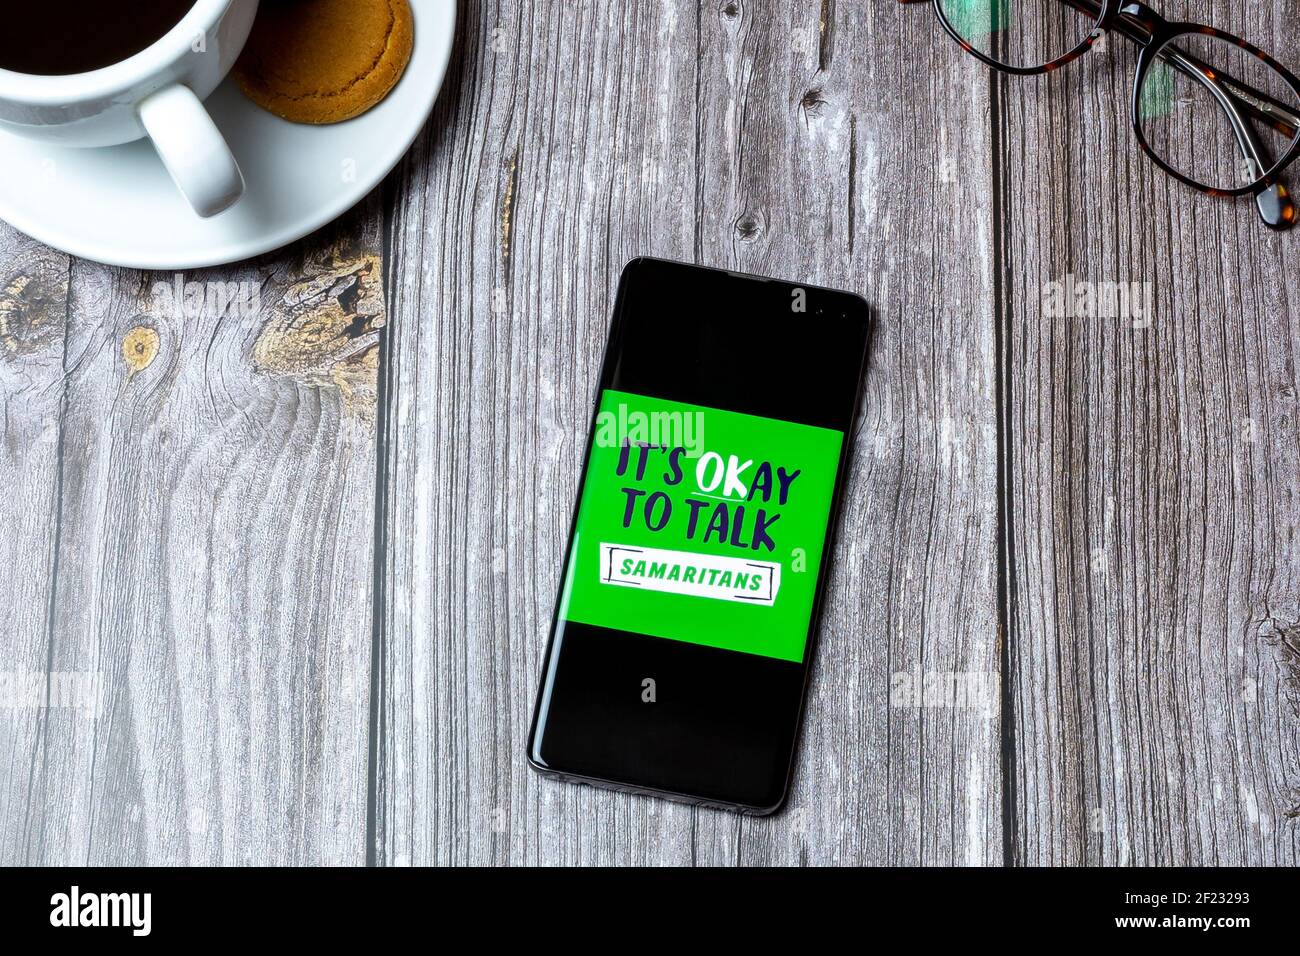 03-10-2021 Portsmouth, Hampshire, UK MOBILTELEFON oder Mobiltelefon auf einem Holztisch mit dem Samaritans-Logo auf dem Bildschirm Stockfoto